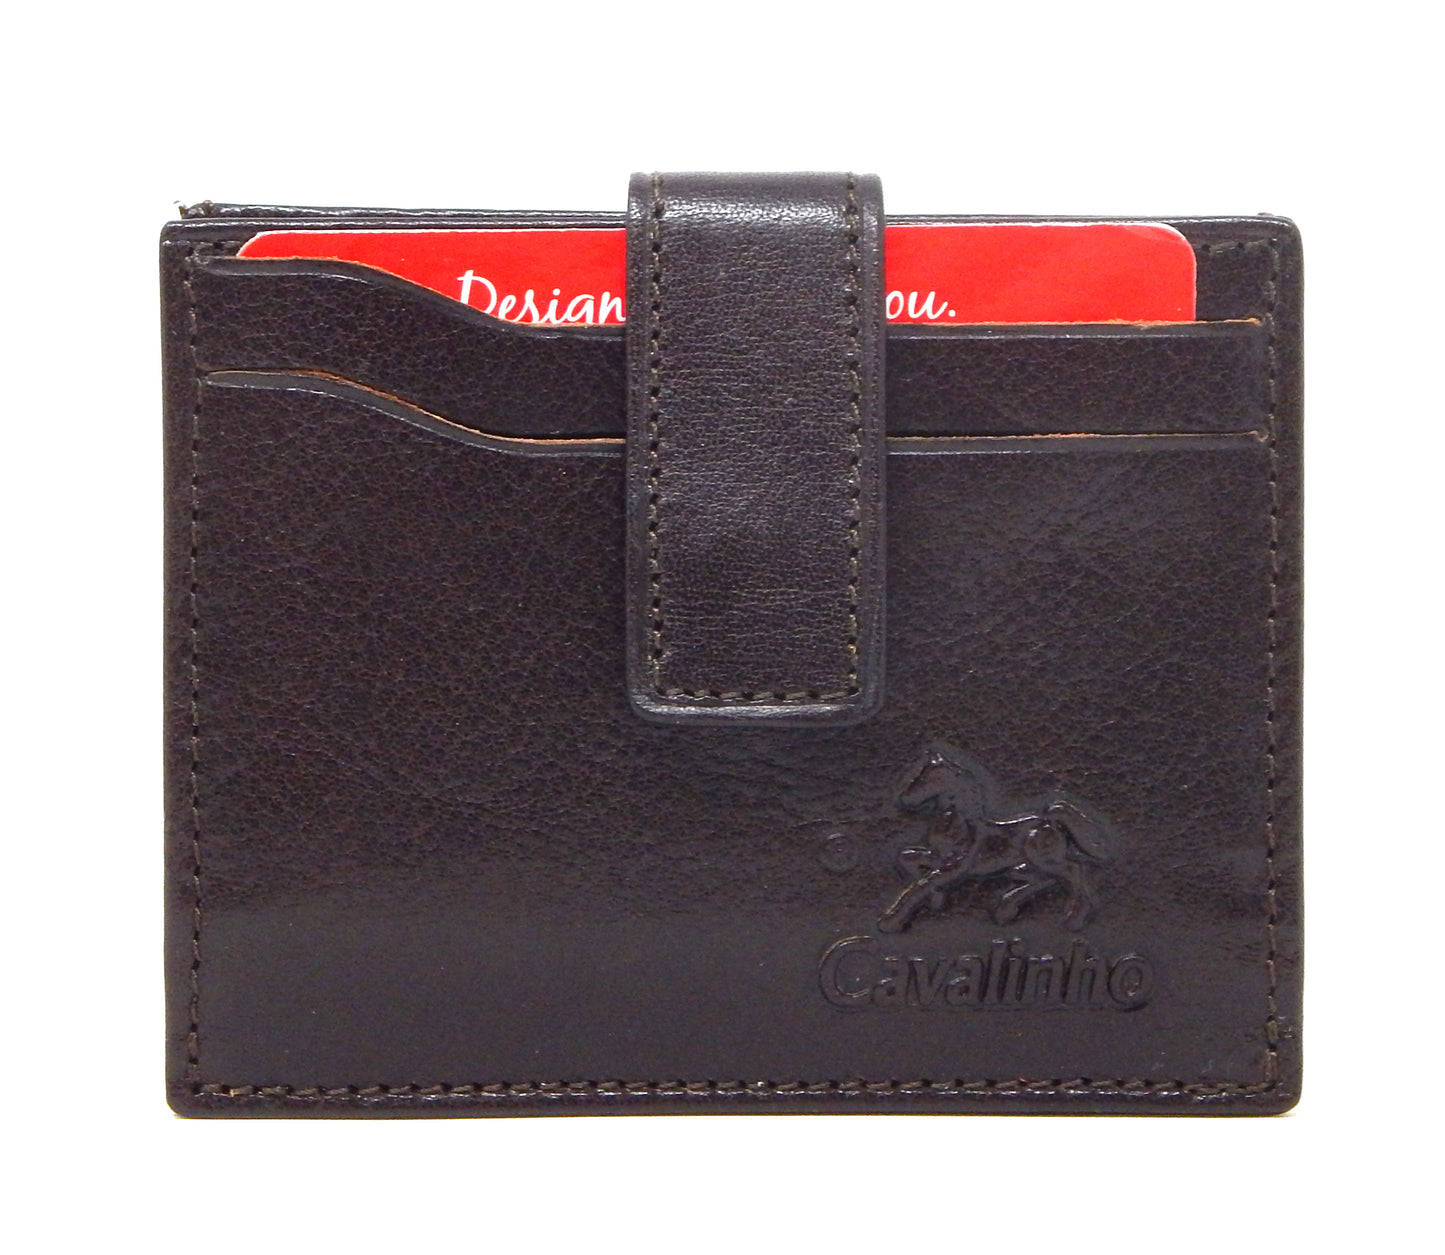 Cavalinho Leather Card Holder Wallet - Brown - 28610576.02.99_1